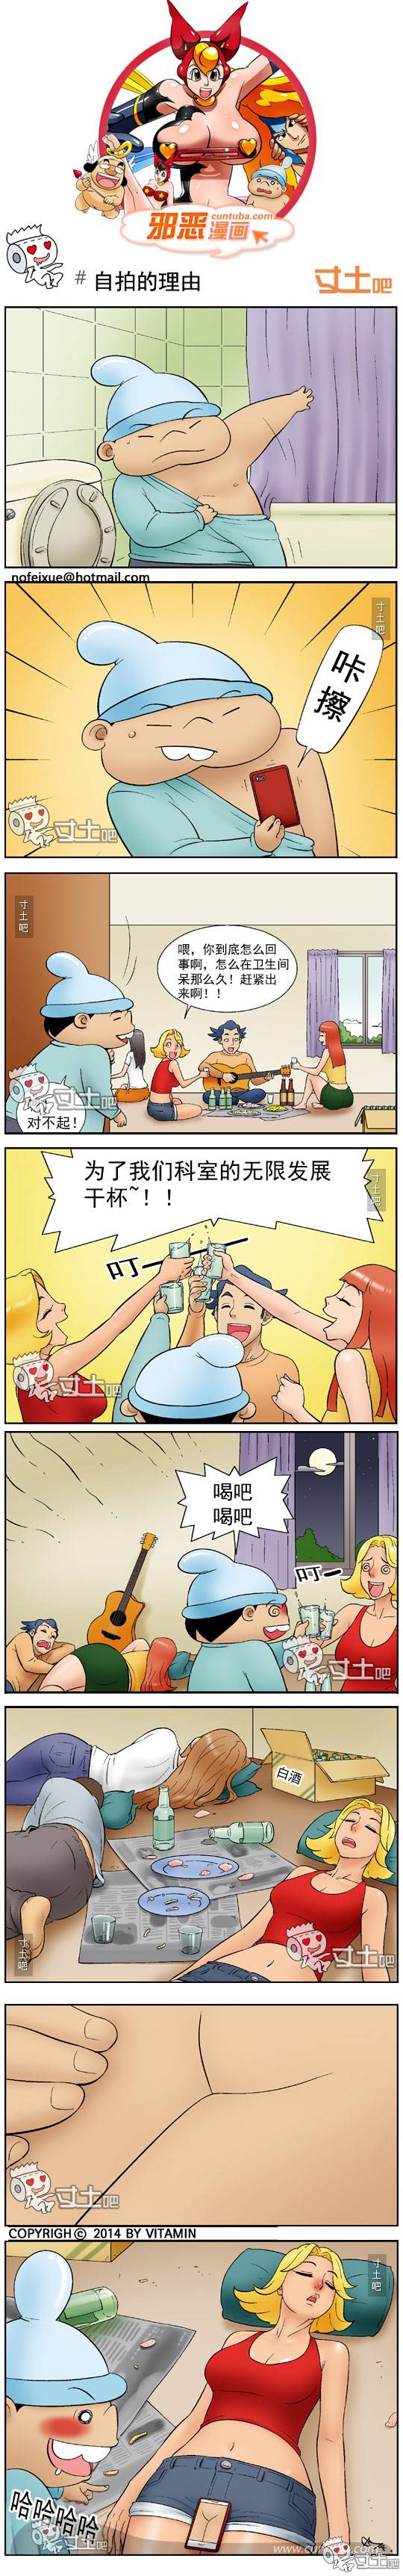 邪恶漫画爆笑囧图第269刊：如此相似的曾经